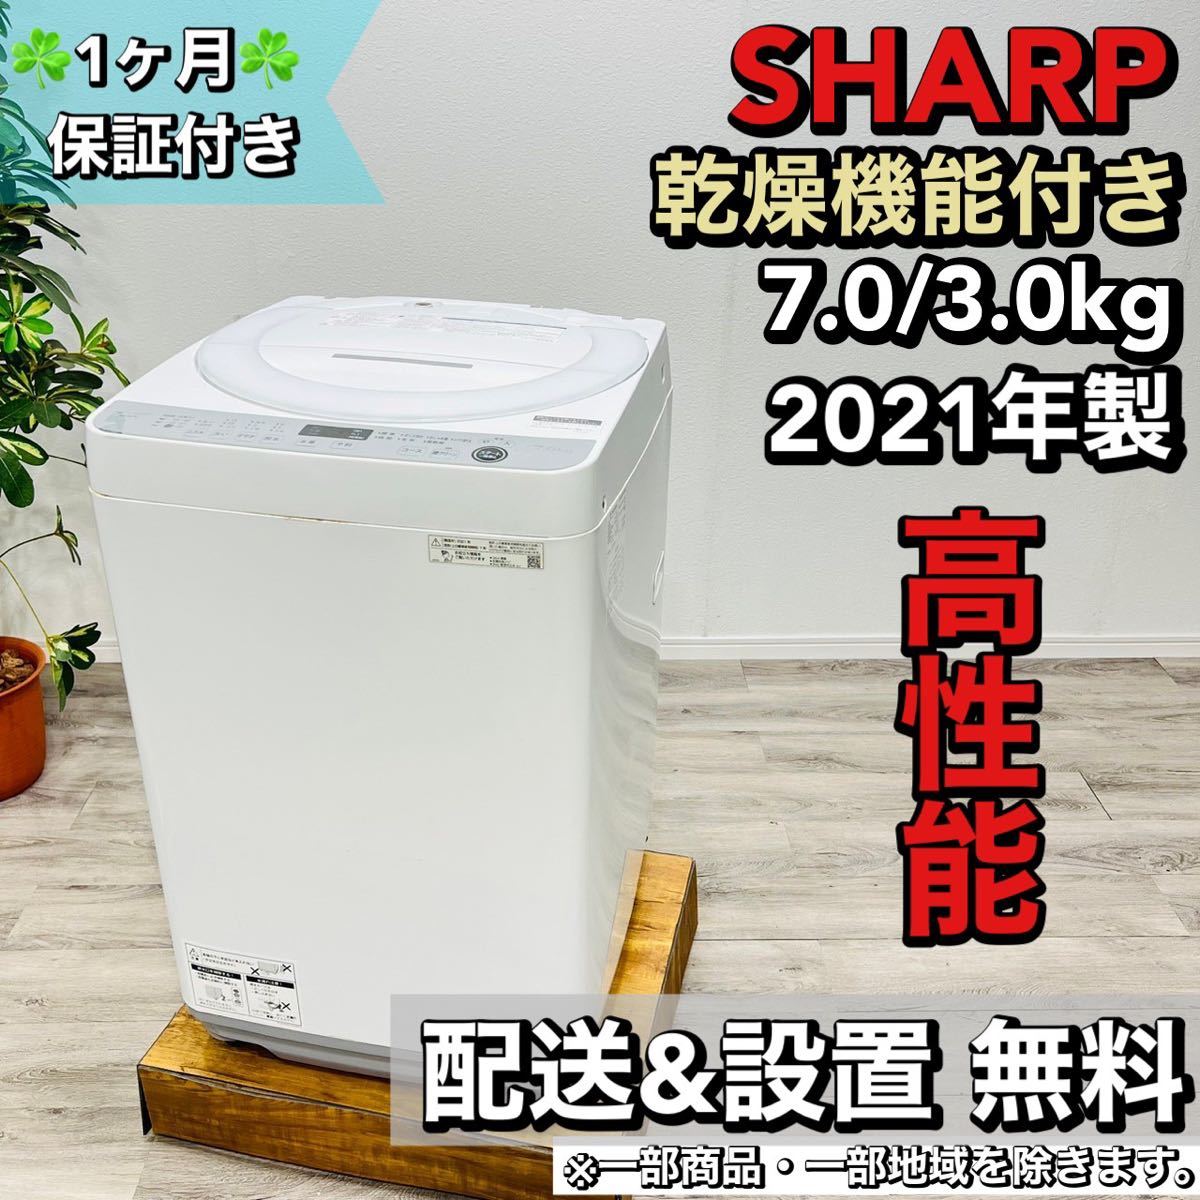 ファッションなデザイン SHARP a1629 洗濯機 7.0kg 2021年製 9 5kg以上